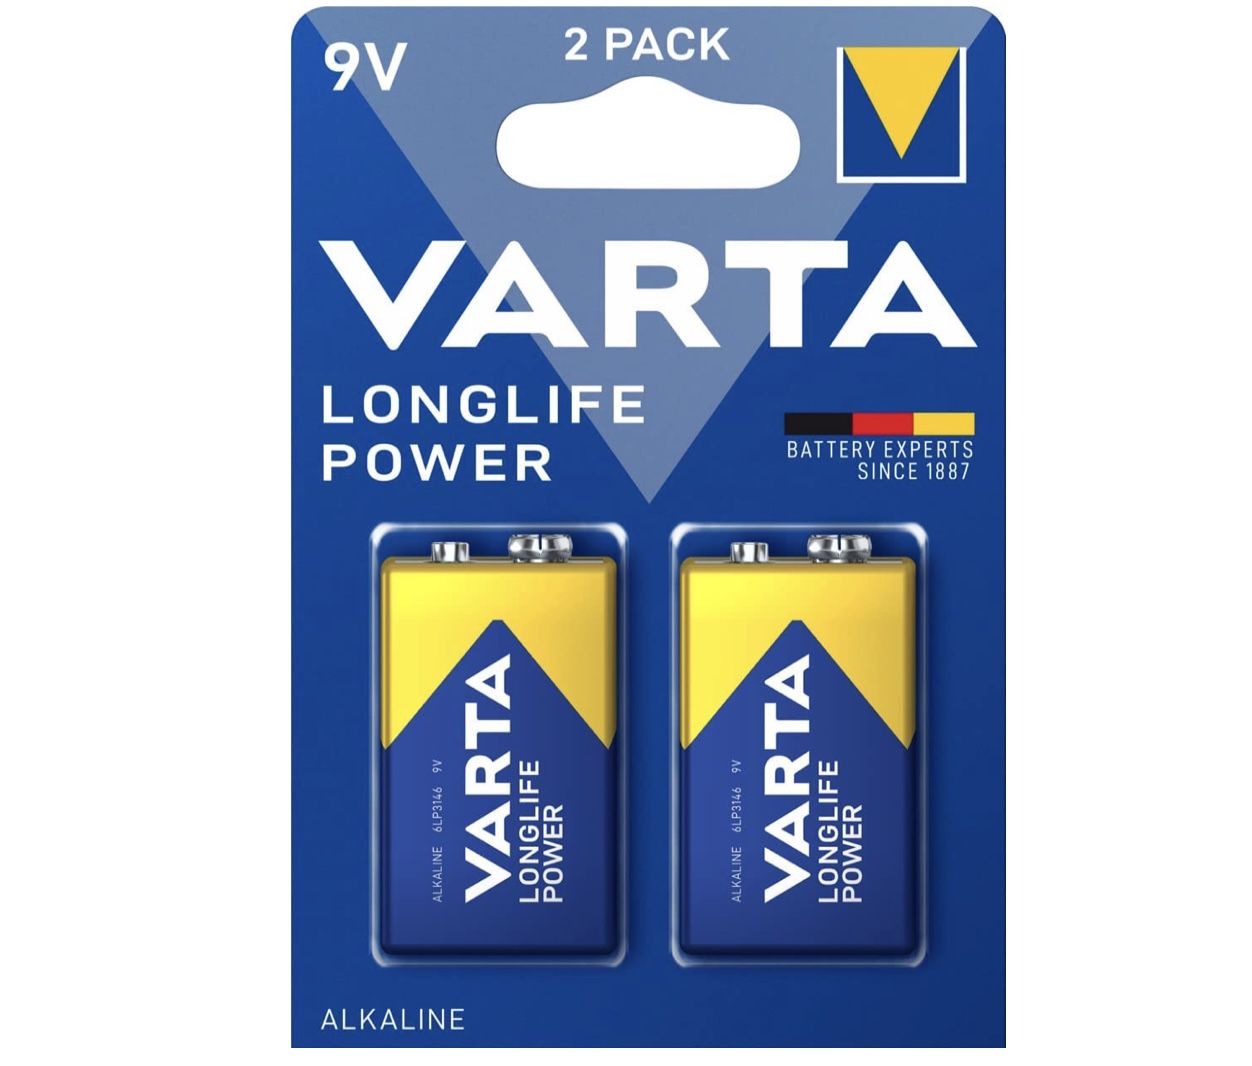 2 x 2er Pack VARTA Longlife Power 9V Block 6LR61 Batterie für 5,24€ (statt 13€) &#8211; Prime